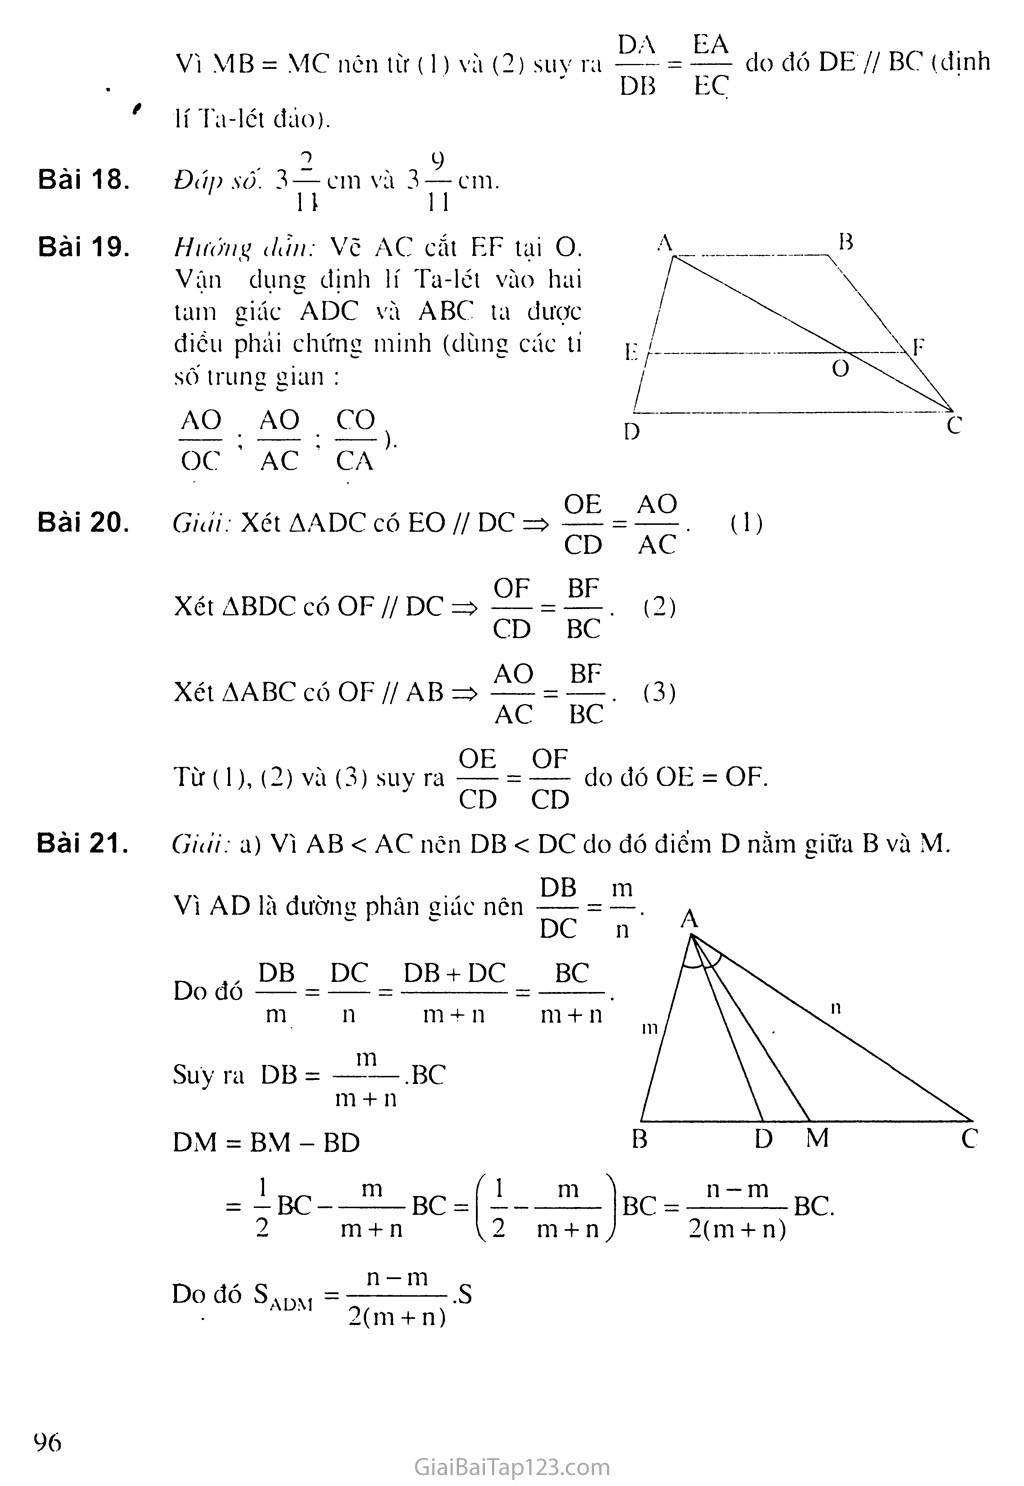 Bài 3. Tính chất đường phân giác của tam giác trang 3